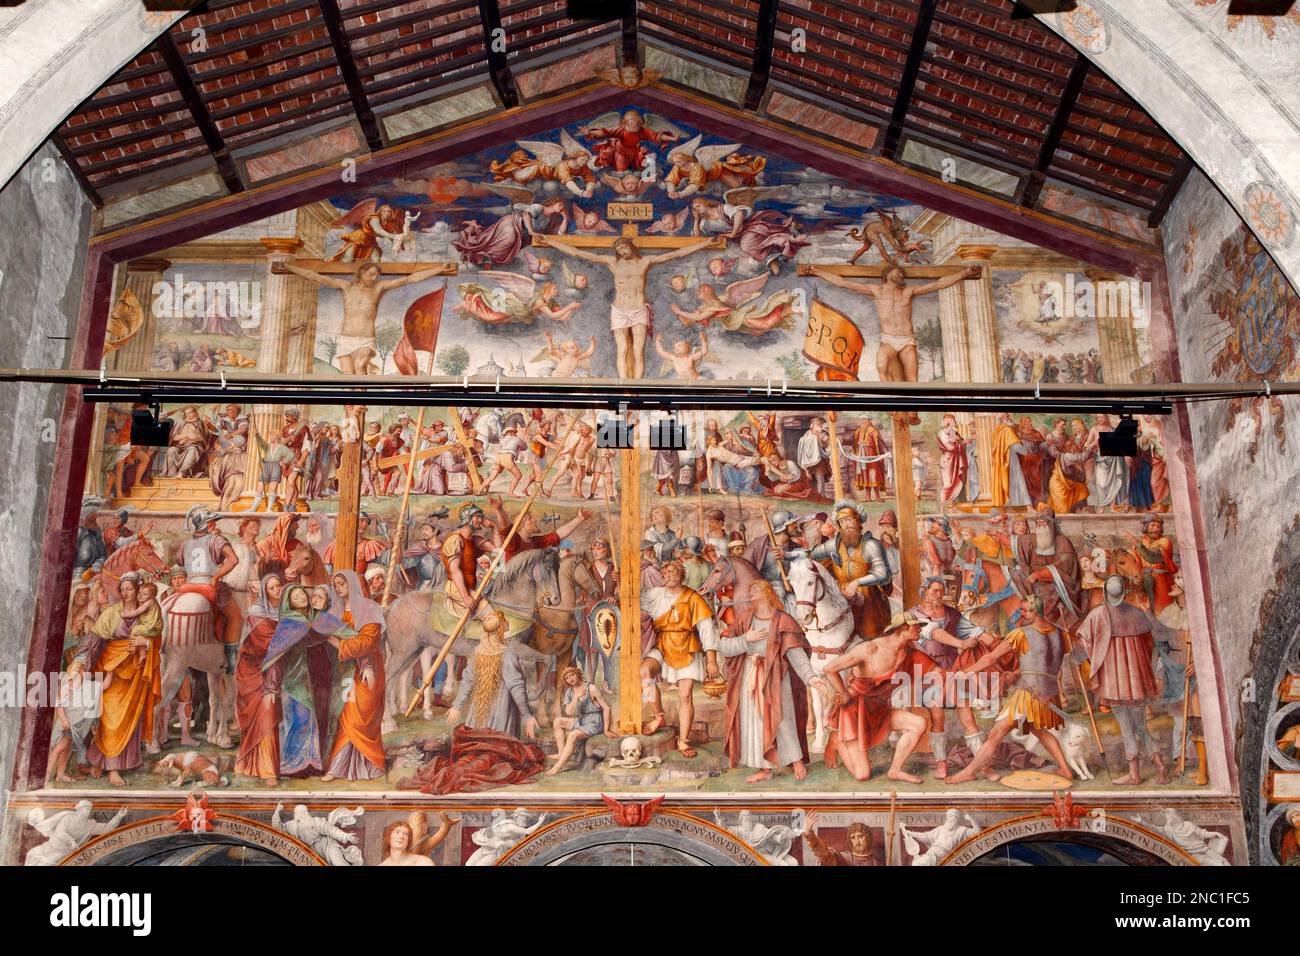 Passion et crucifixion, 1529 AD (par Bernardino Luini, disciple de Léonard) - Église de Santa Maria degli Angioli, Lugano, Suisse Banque D'Images